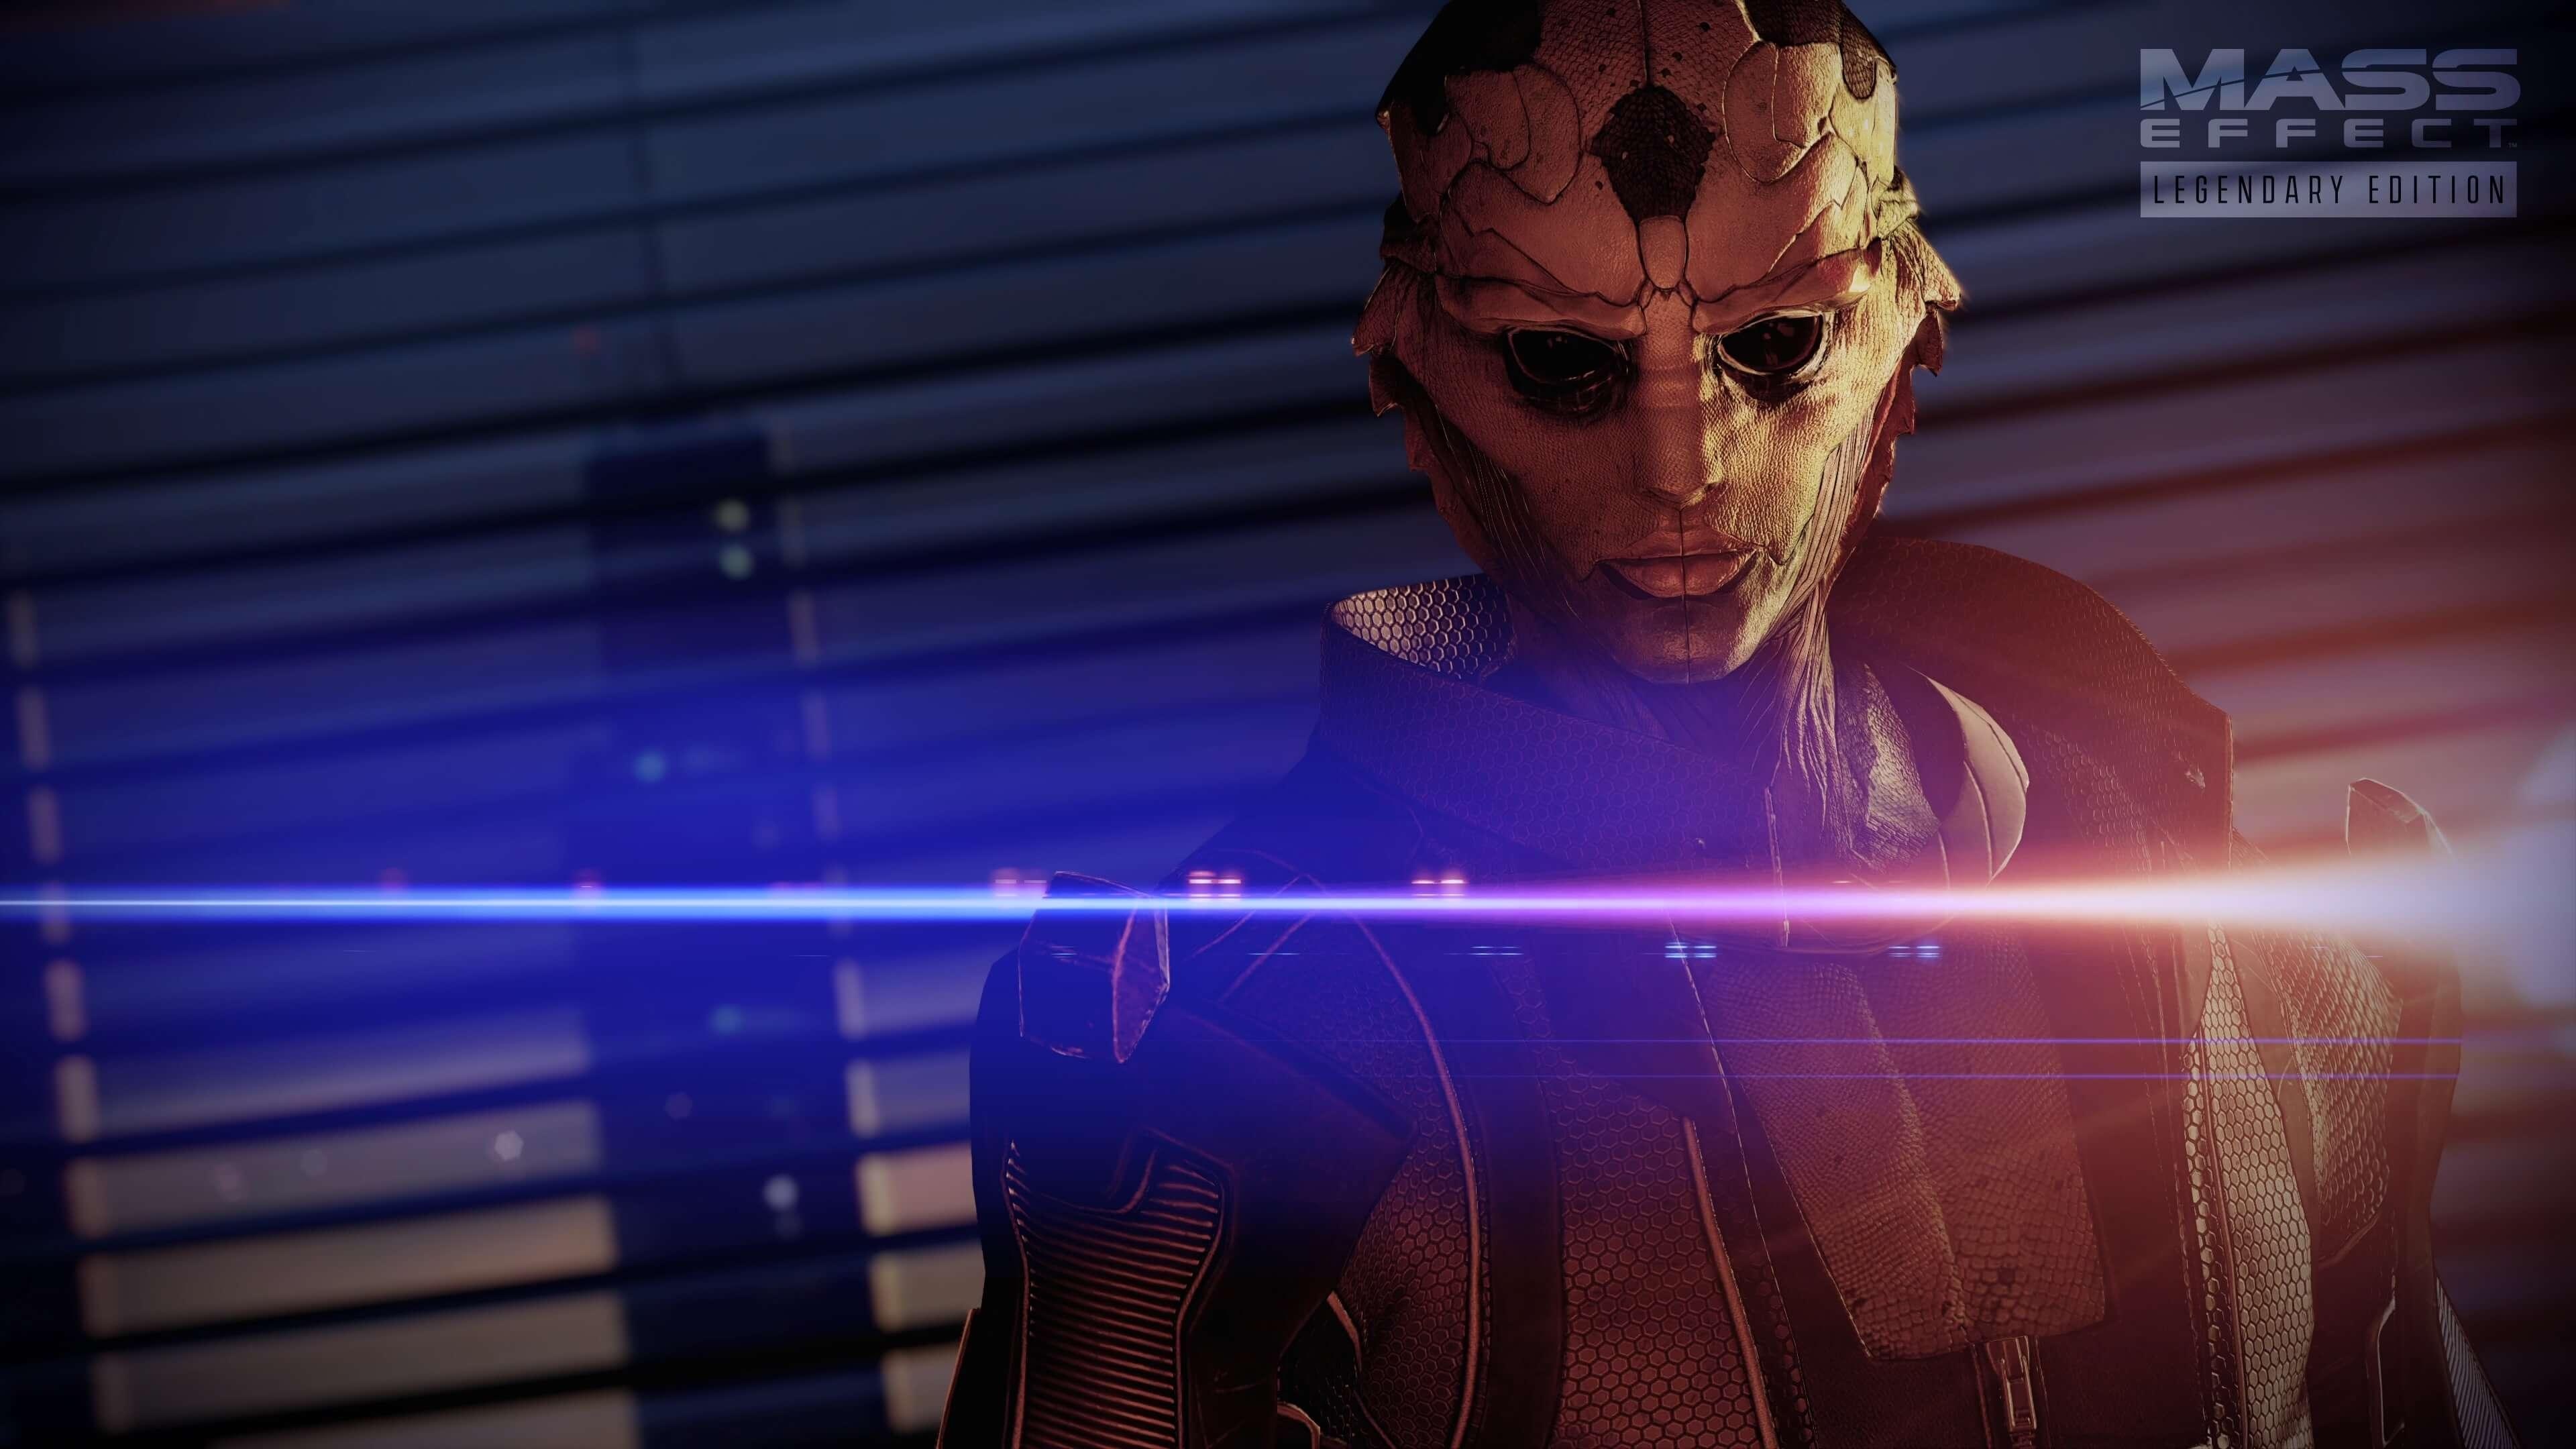 Mass Effect 2: Kasumi, Windows X360 game, 3840x2160 4K Desktop